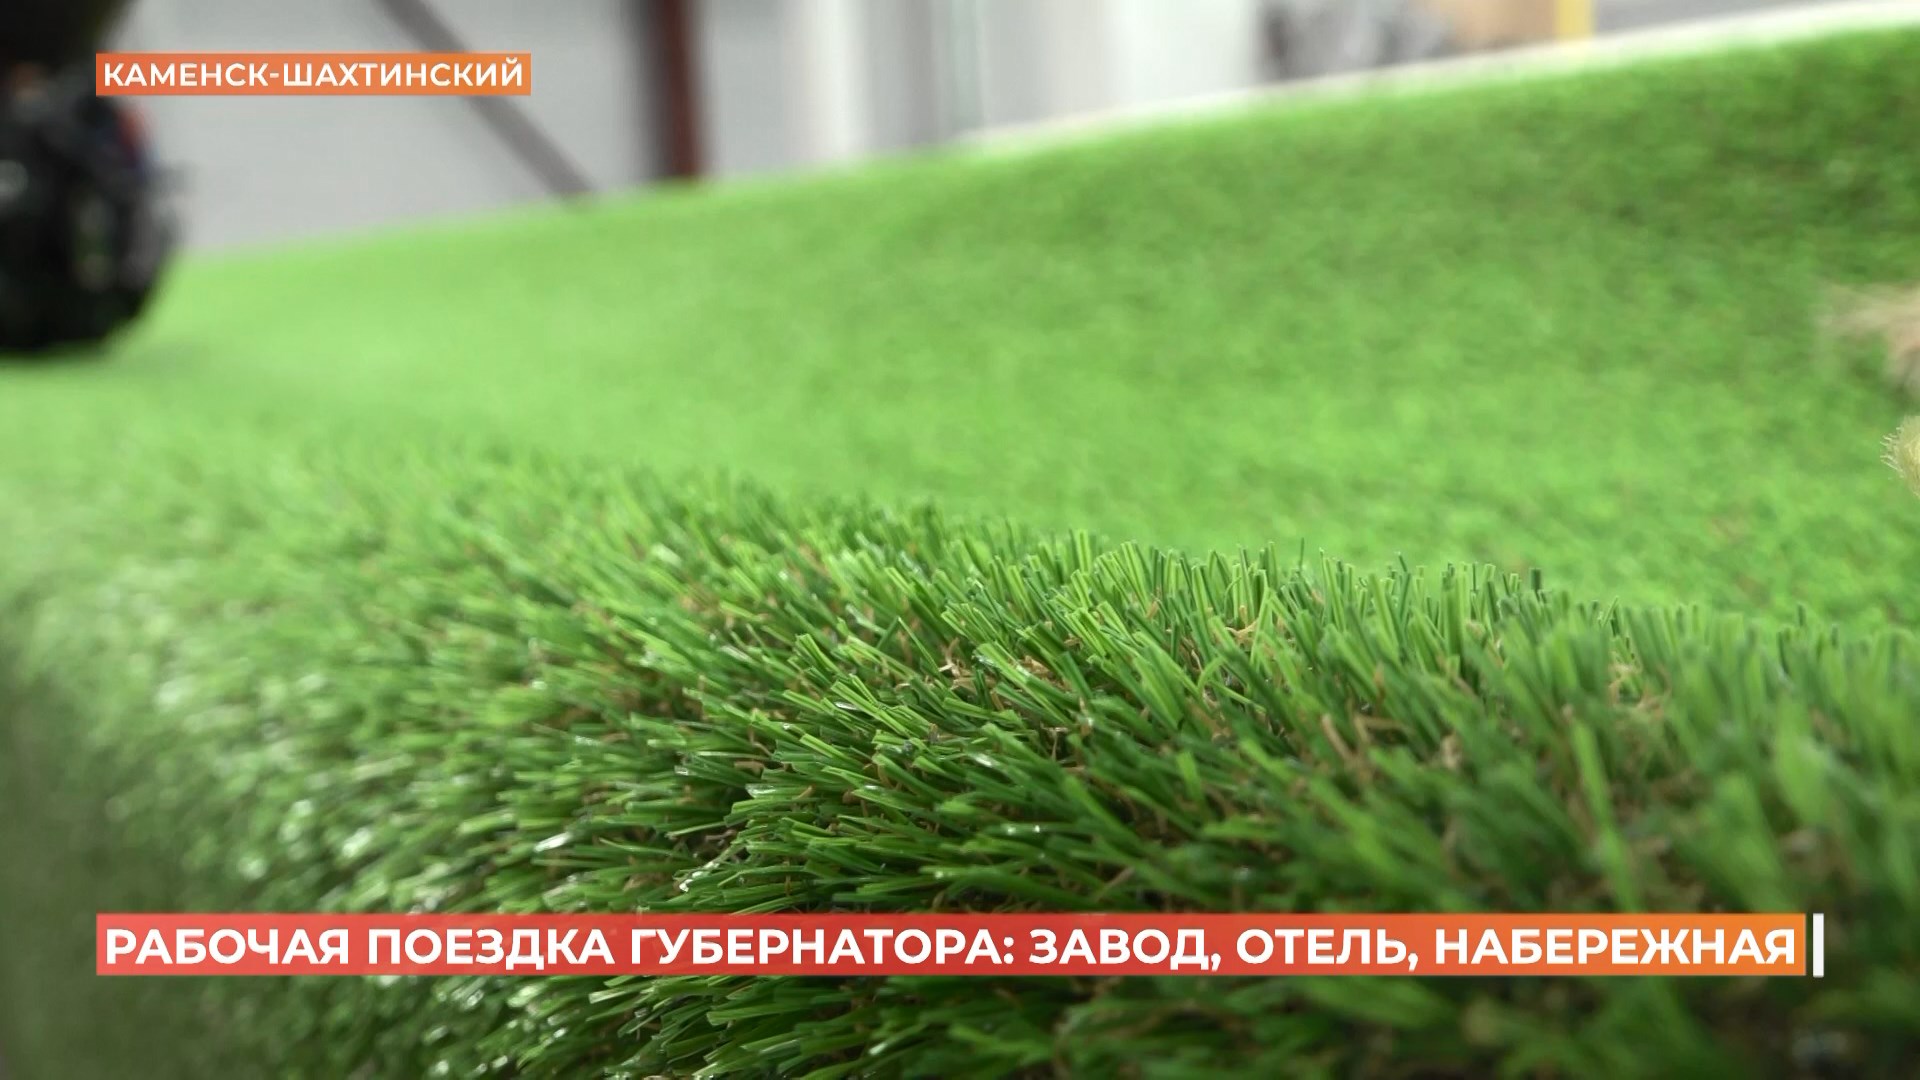 Искусственную газонную траву будут выпускать на ткацком оборудовании в Каменске-Шахтинском